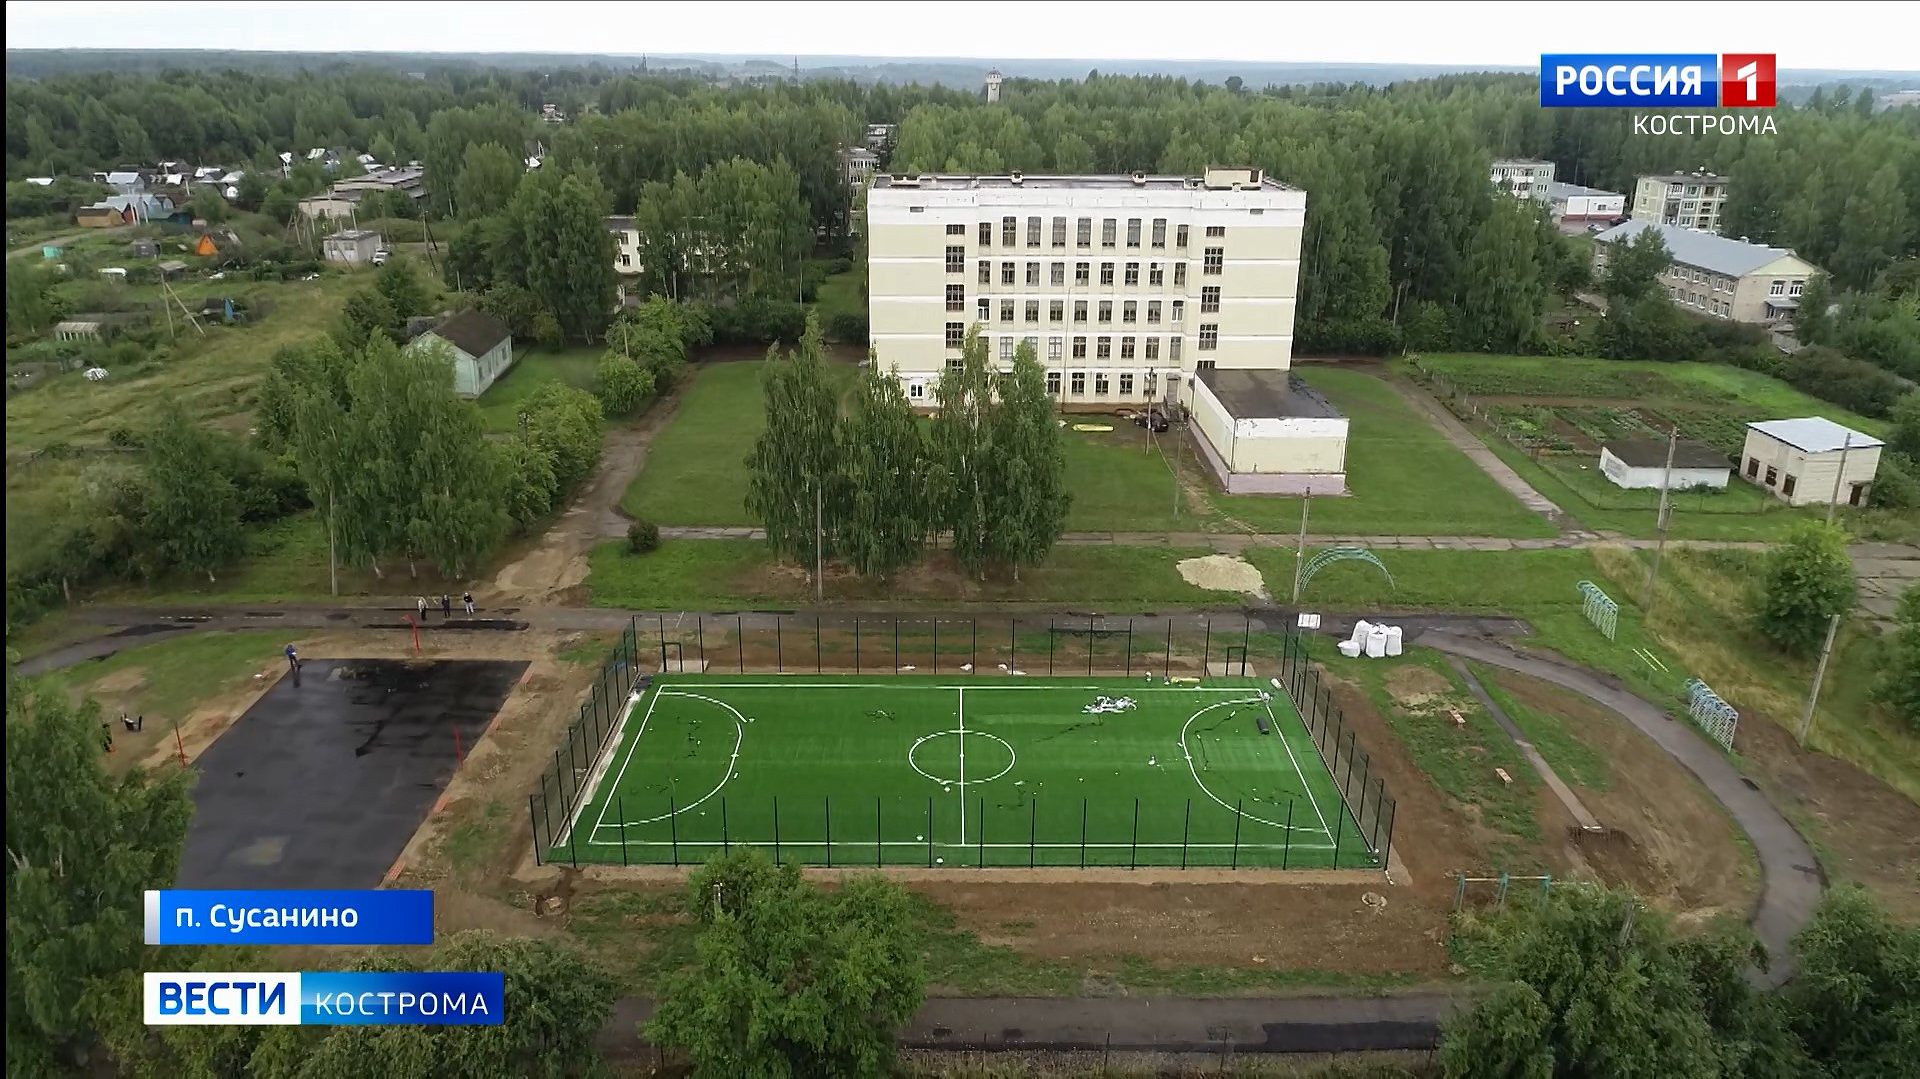 Два упругих футбольных 3G-поля строится в Костромской области